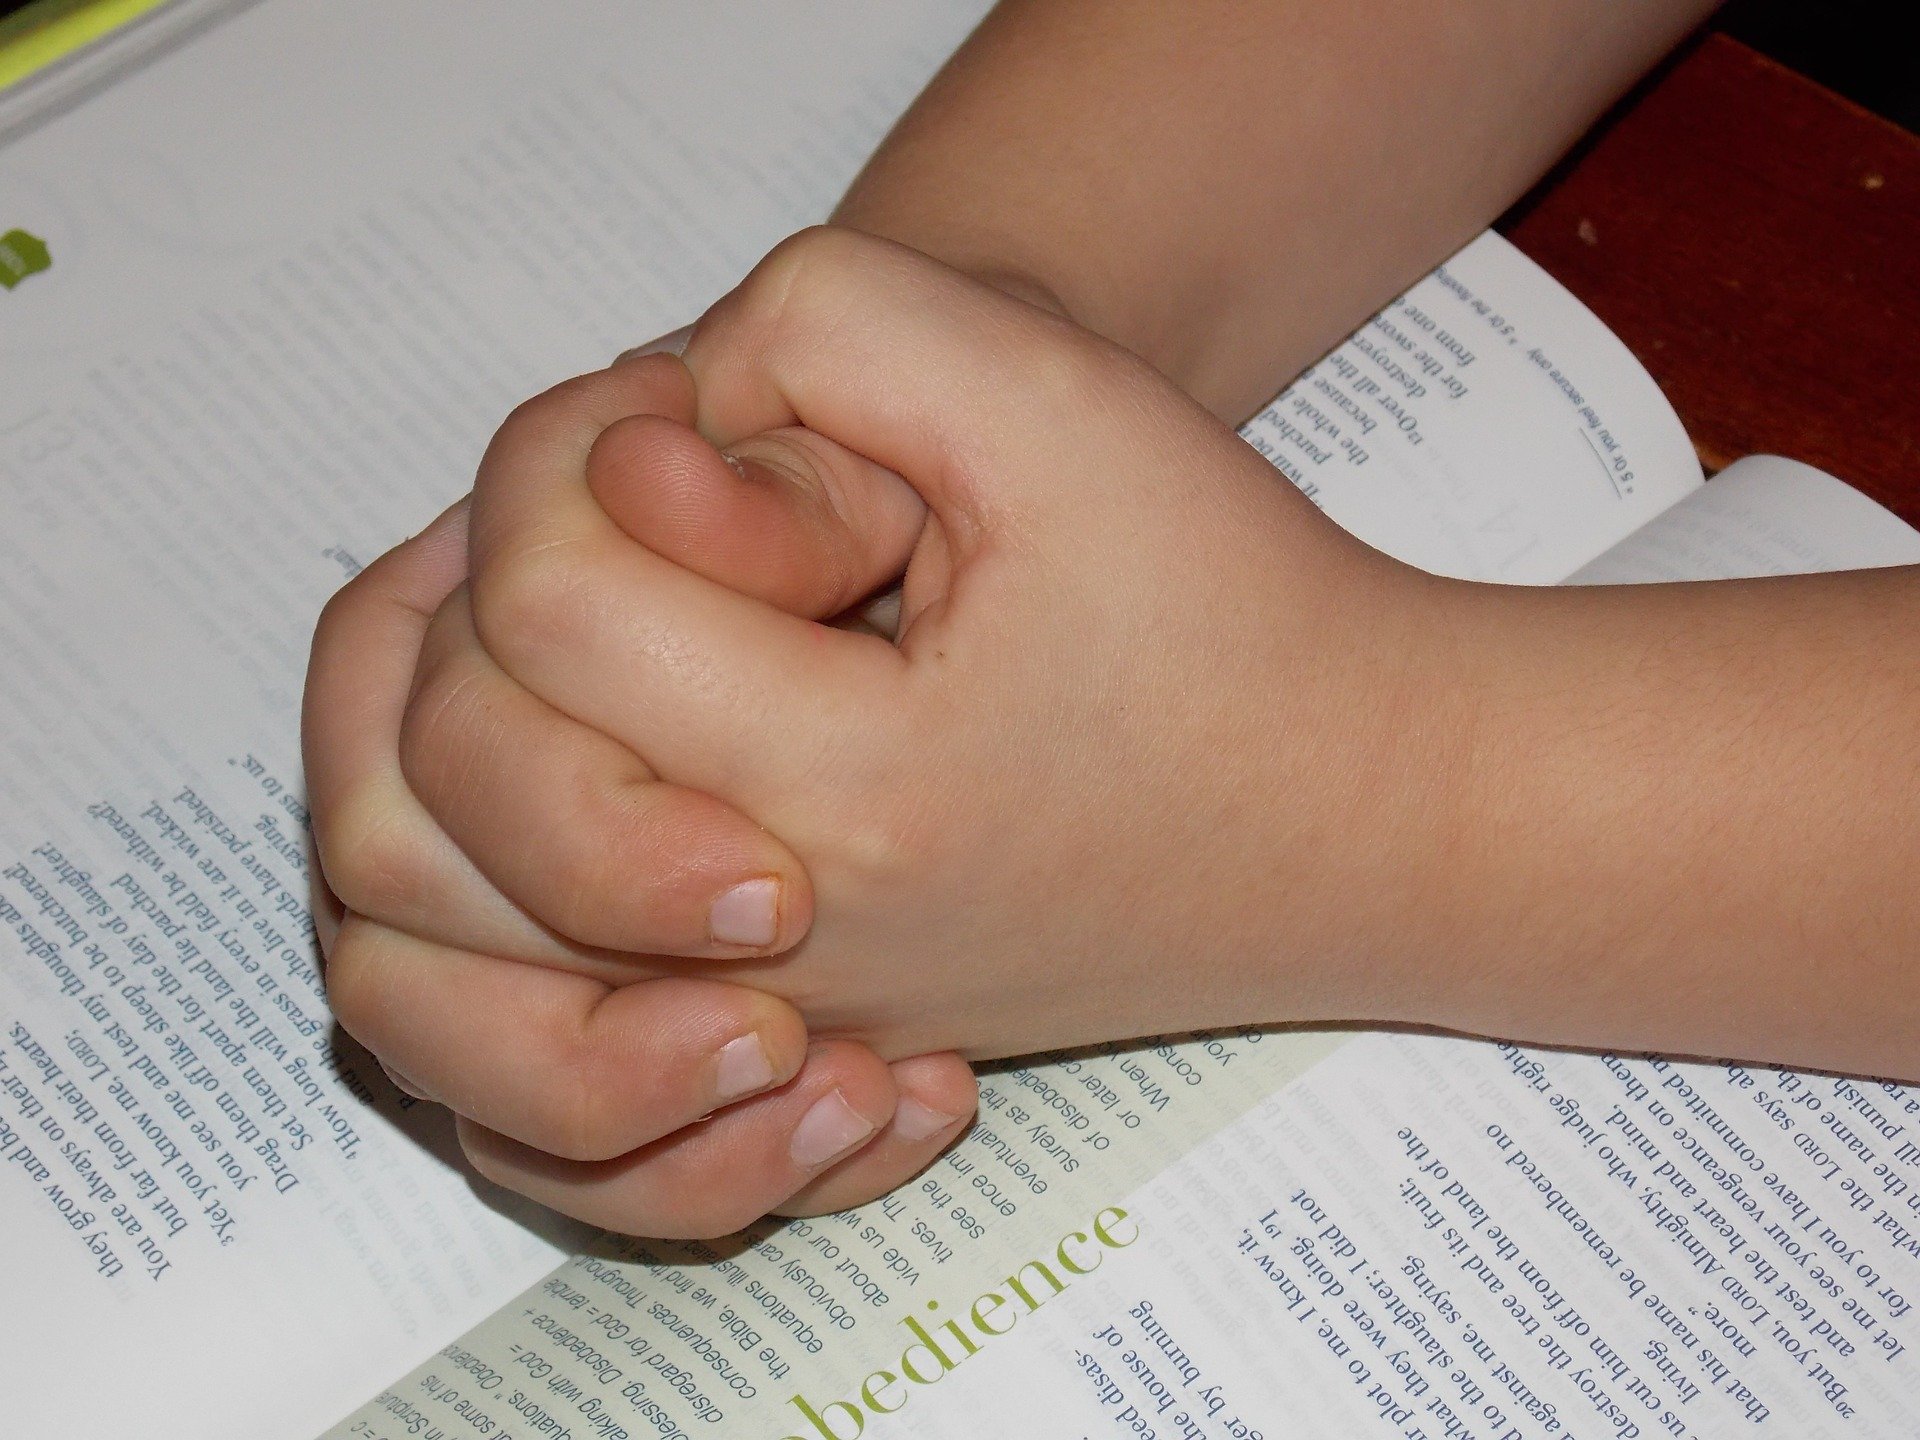 Mãos de criança unida apoiadas em cima de bíblia, em sinal de oração